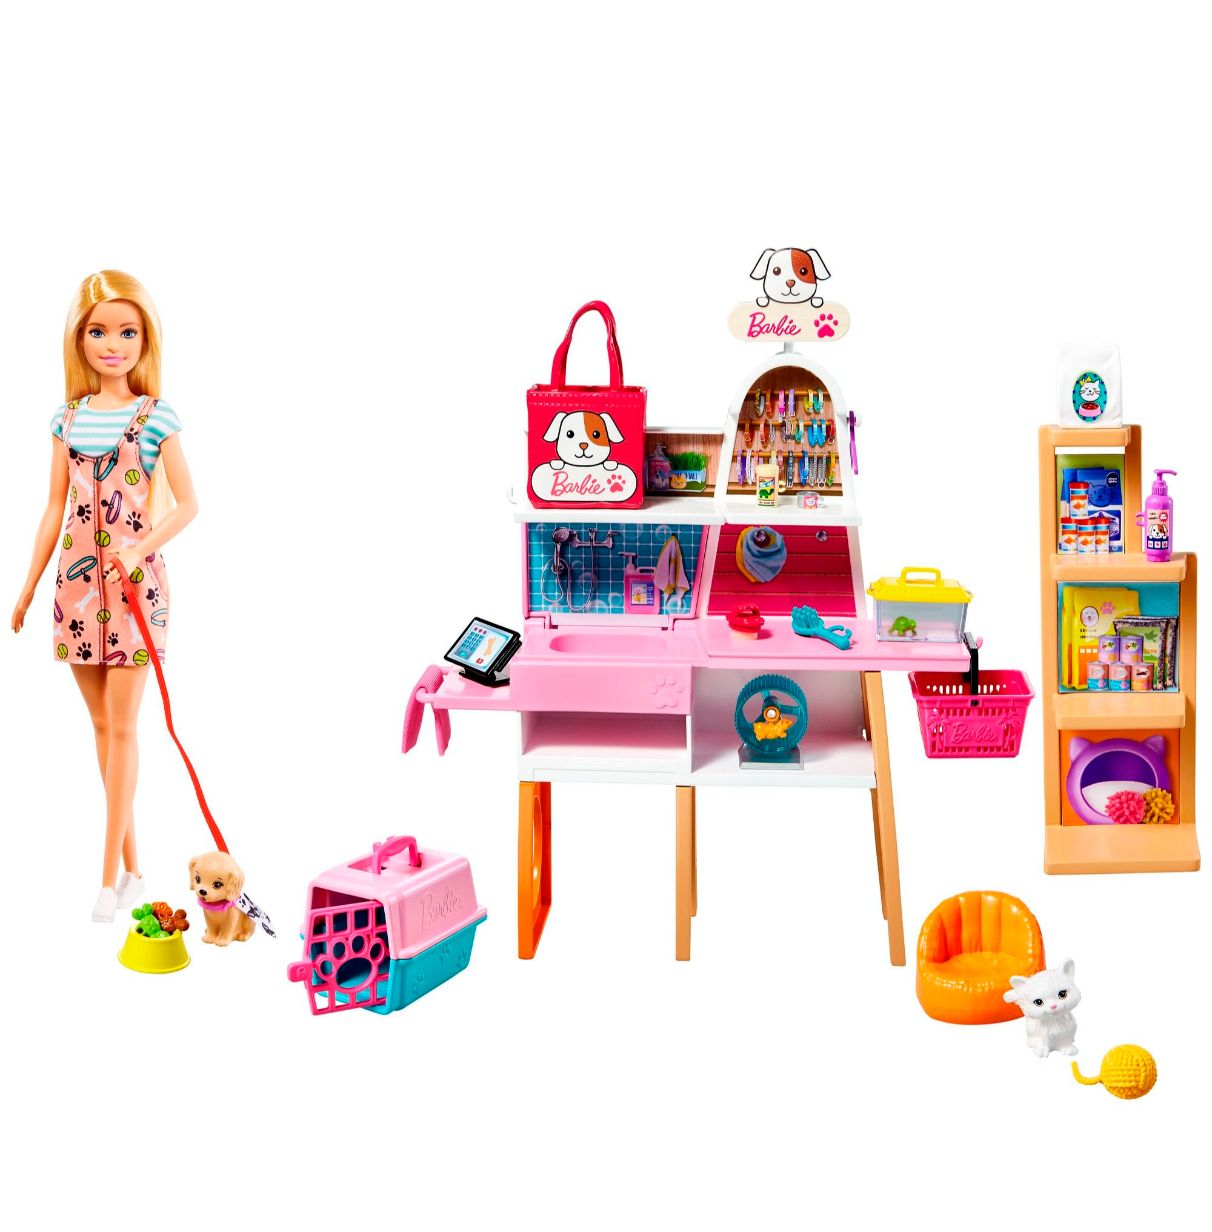 barbie tienda de mascotas muñeca con establecimiento de animales y accesorios para mascotas de juguete (mattel grg90)